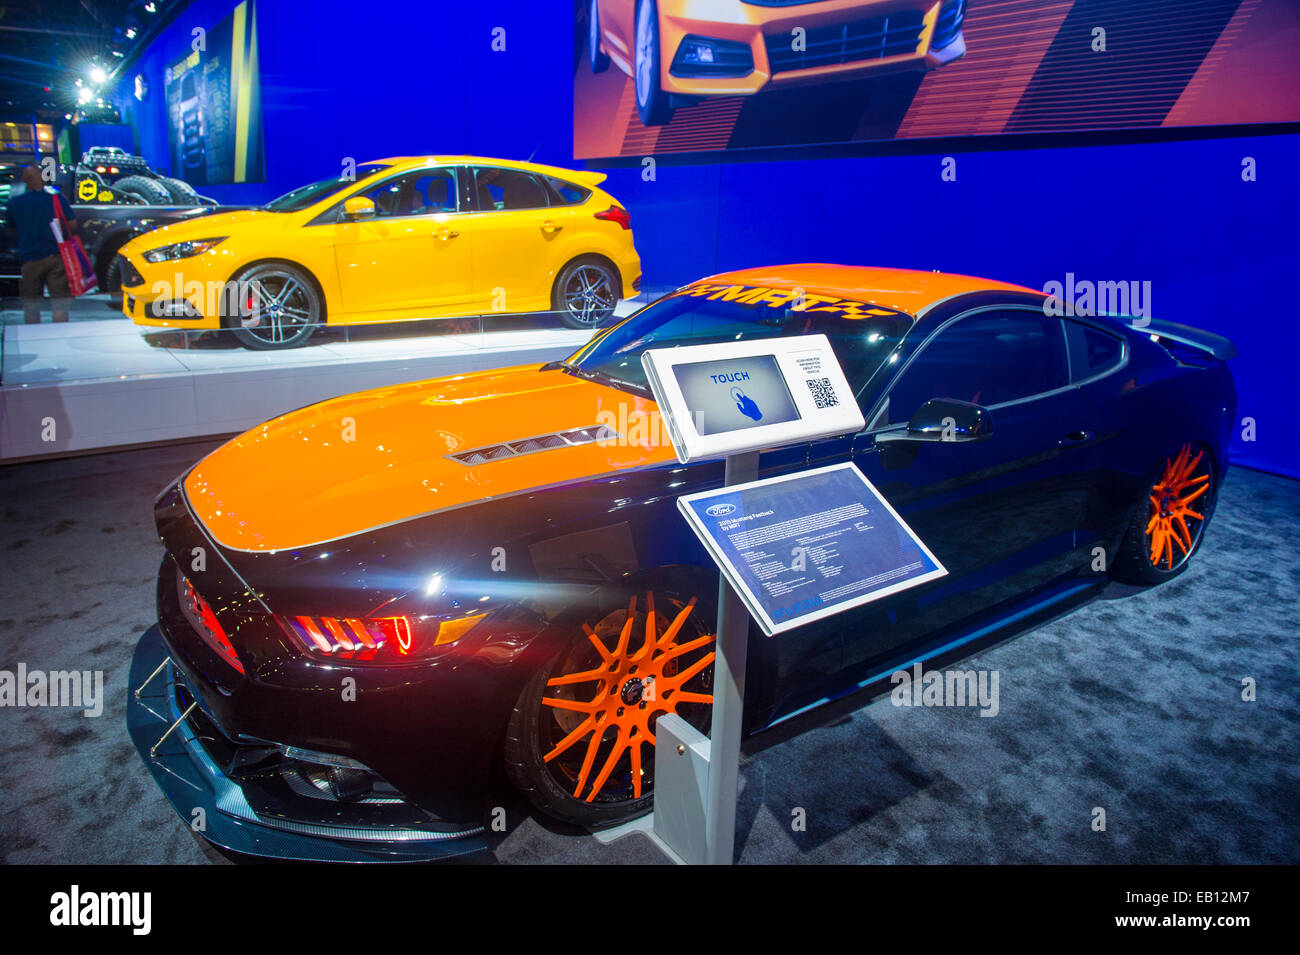 Der Ford-Stand auf der SEMA Show in Las Vegas Stockfoto